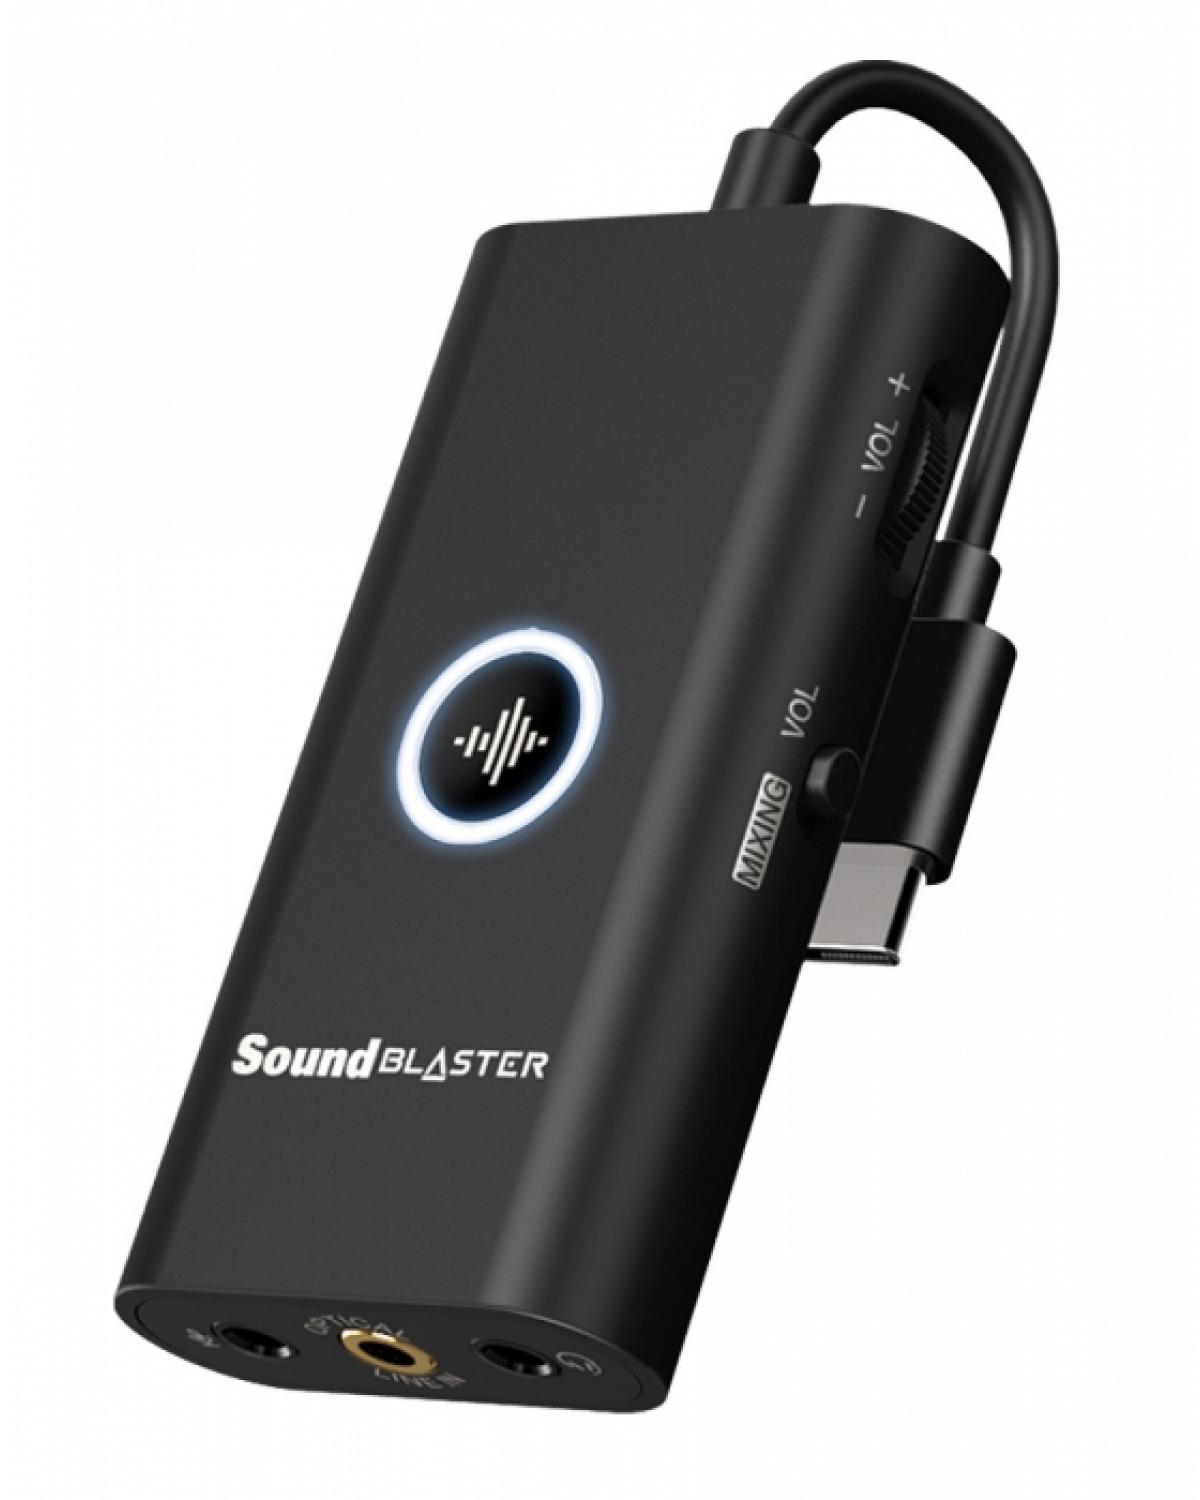 PLACA DE SOM - SOUND BLASTER G3 - PORTÁTIL USB-C PARA PS4, SWITCH, PC E MAC -70SB183000000